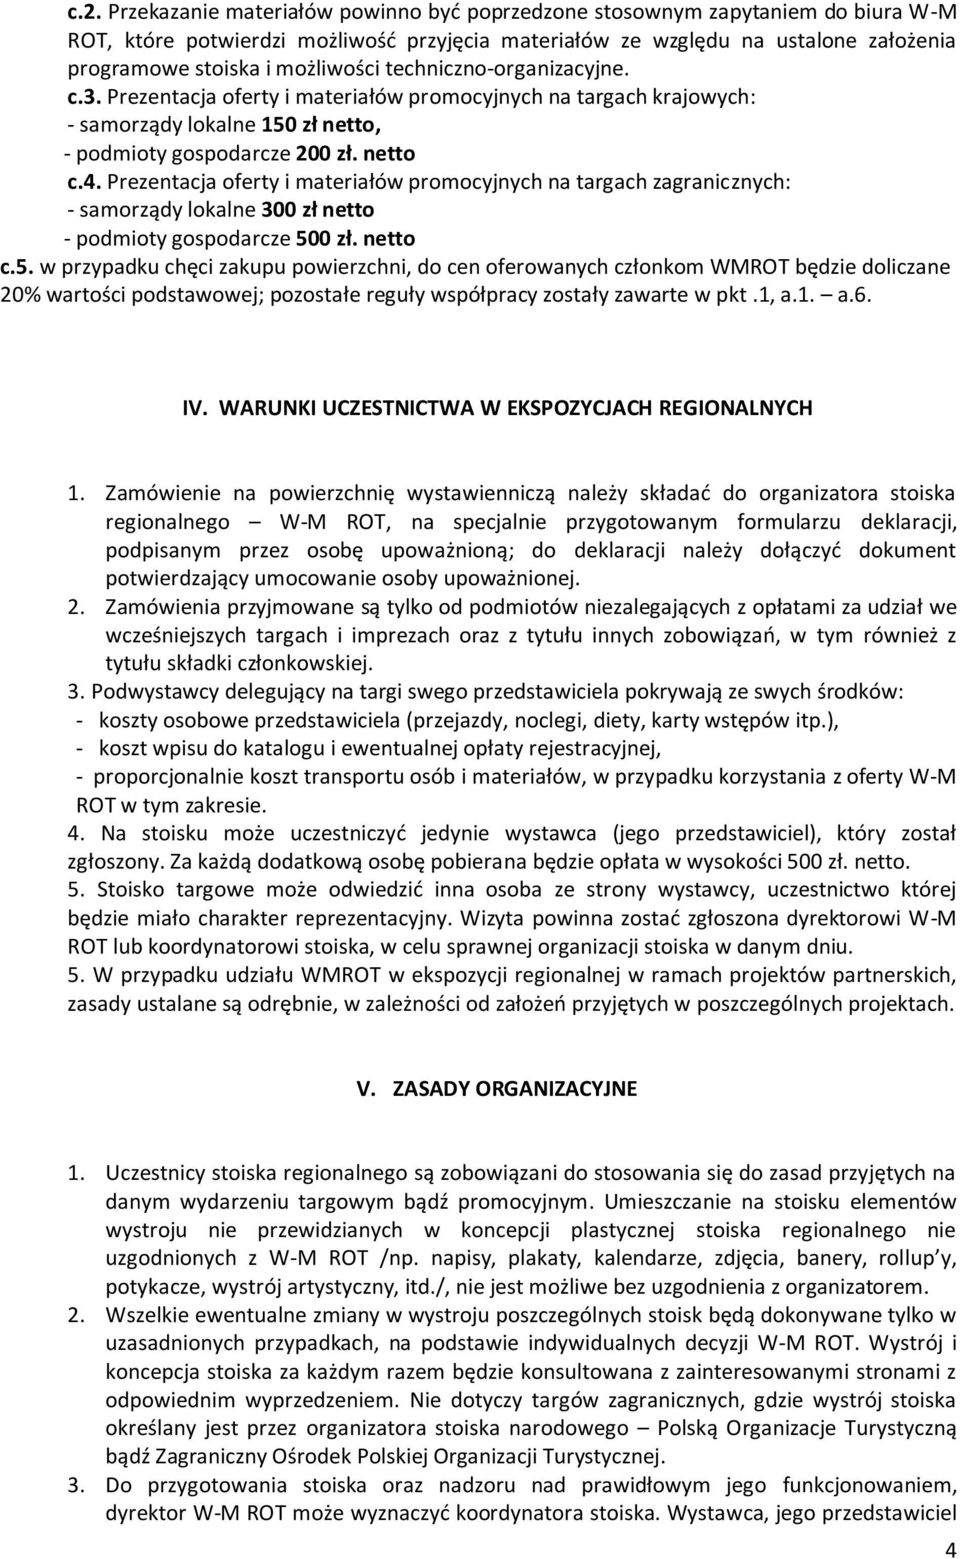 Prezentacja oferty i materiałów promocyjnych na targach zagranicznych: - samorządy lokalne 300 zł netto - podmioty gospodarcze 50